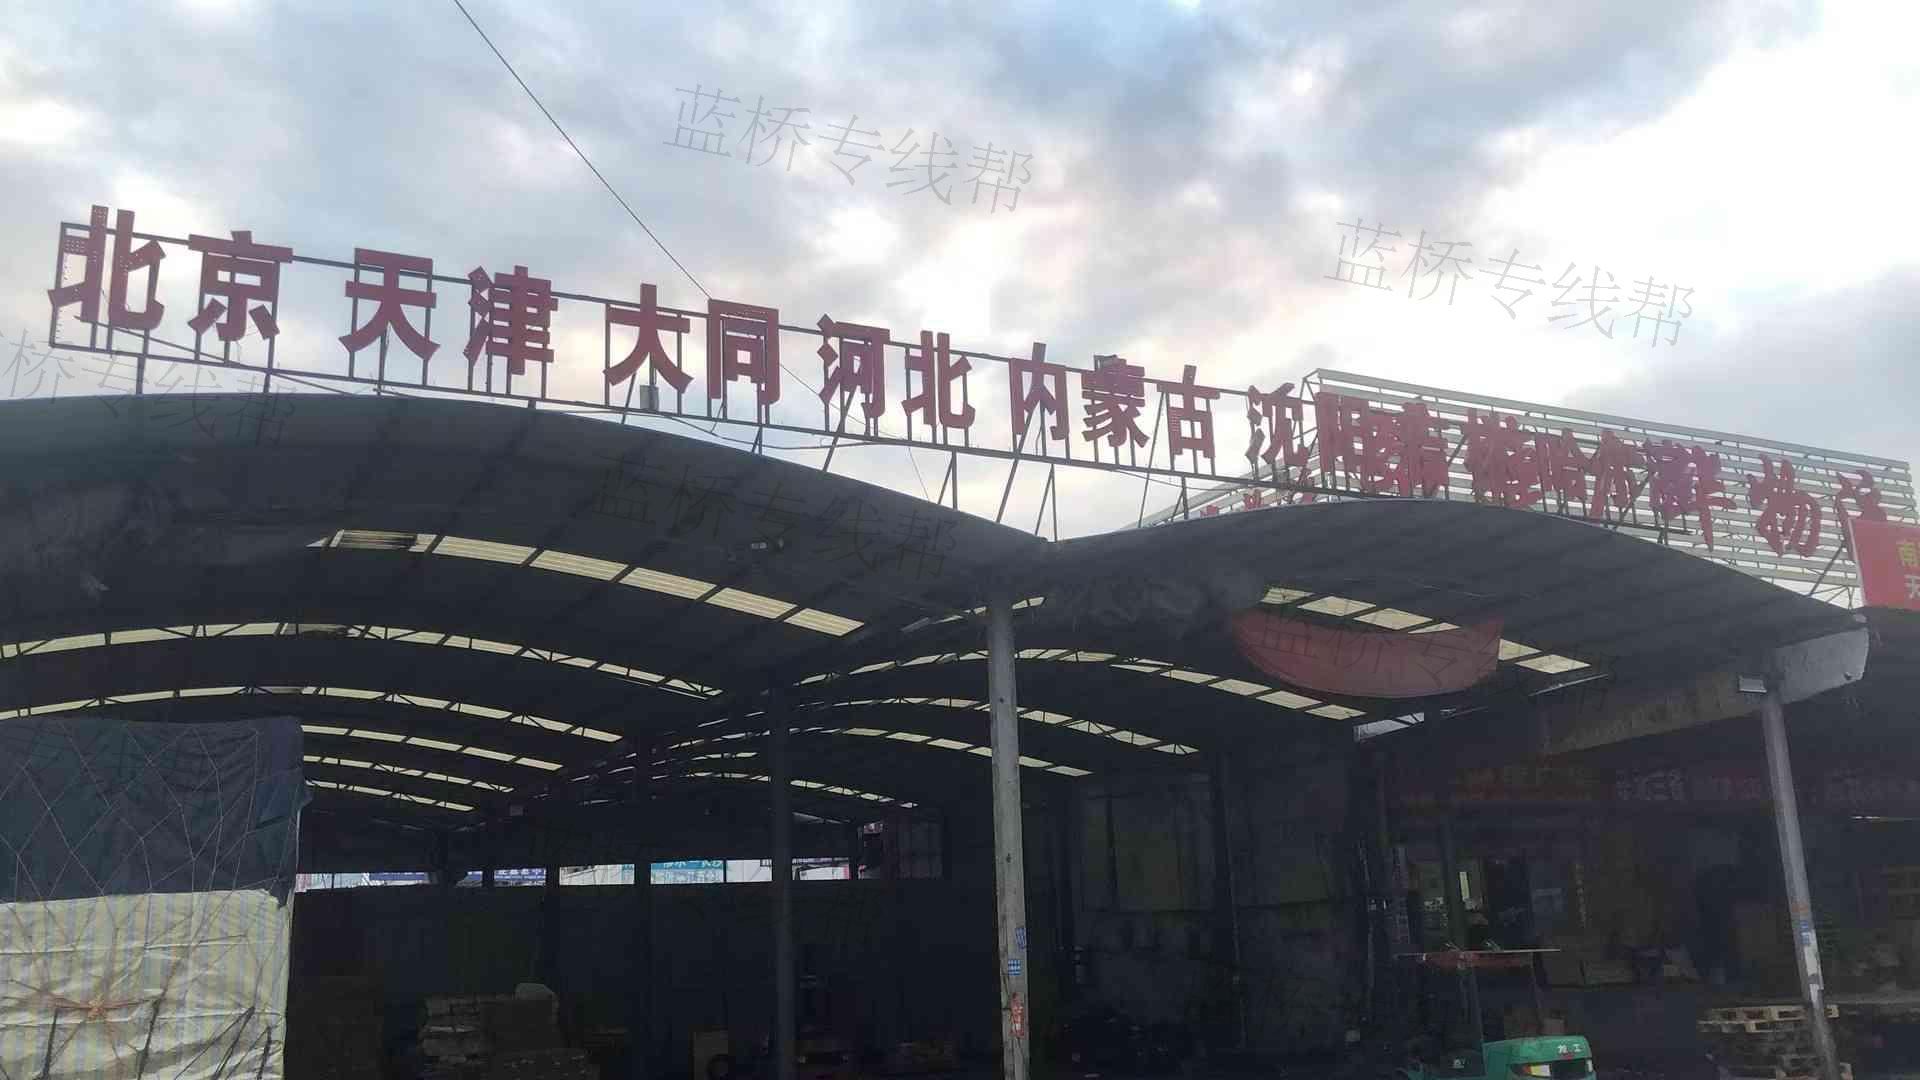 北京路捷广华供应链管理有限公司